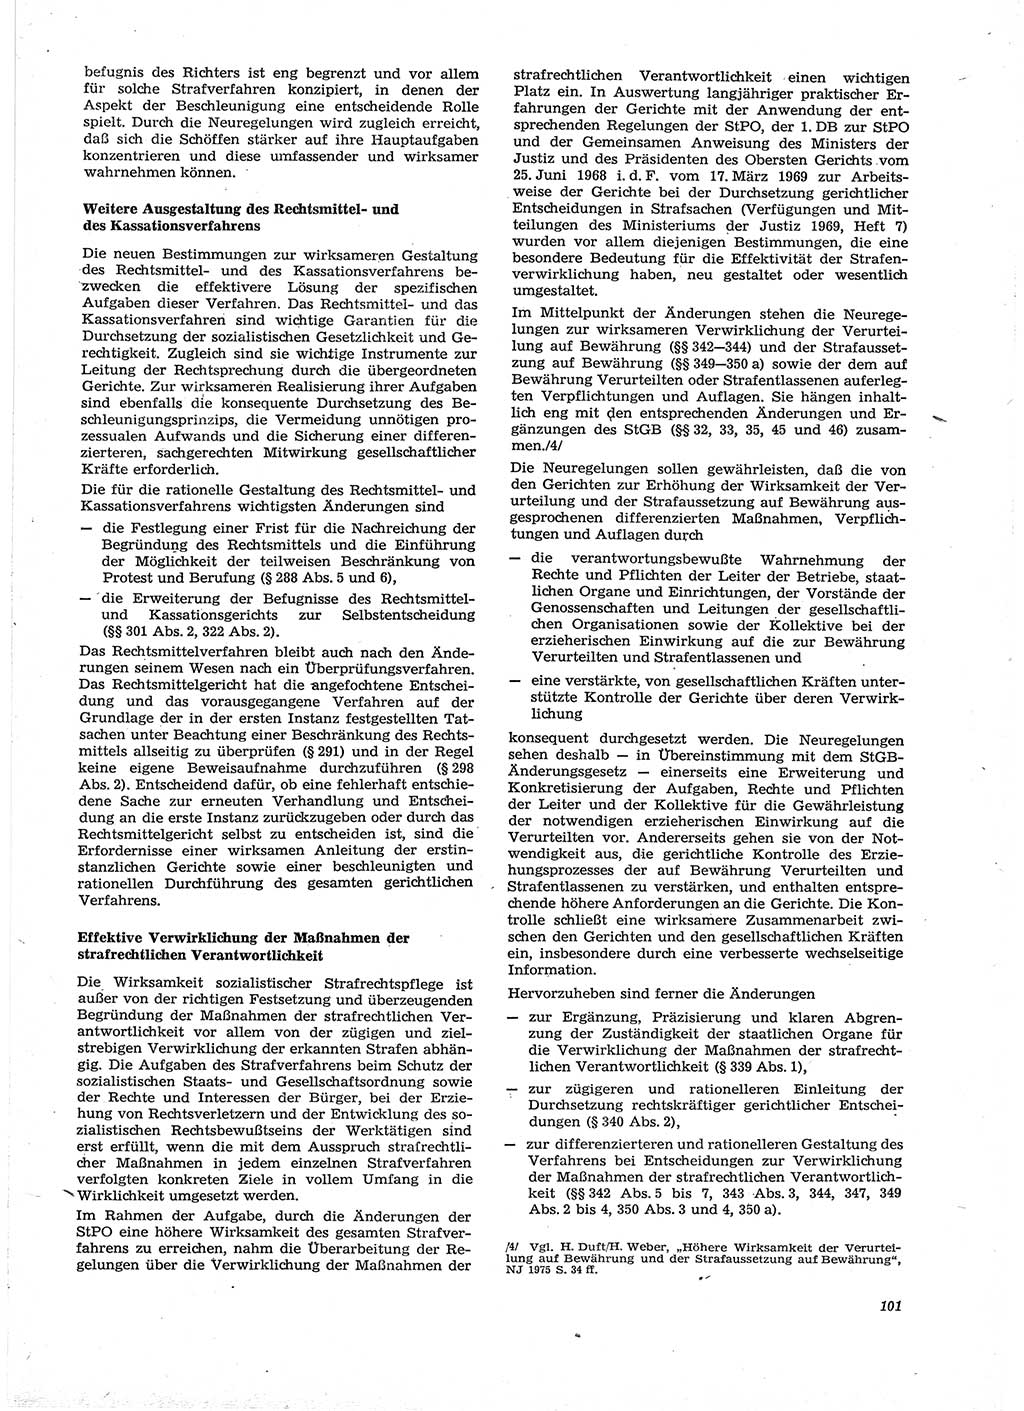 Neue Justiz (NJ), Zeitschrift für Recht und Rechtswissenschaft [Deutsche Demokratische Republik (DDR)], 29. Jahrgang 1975, Seite 101 (NJ DDR 1975, S. 101)